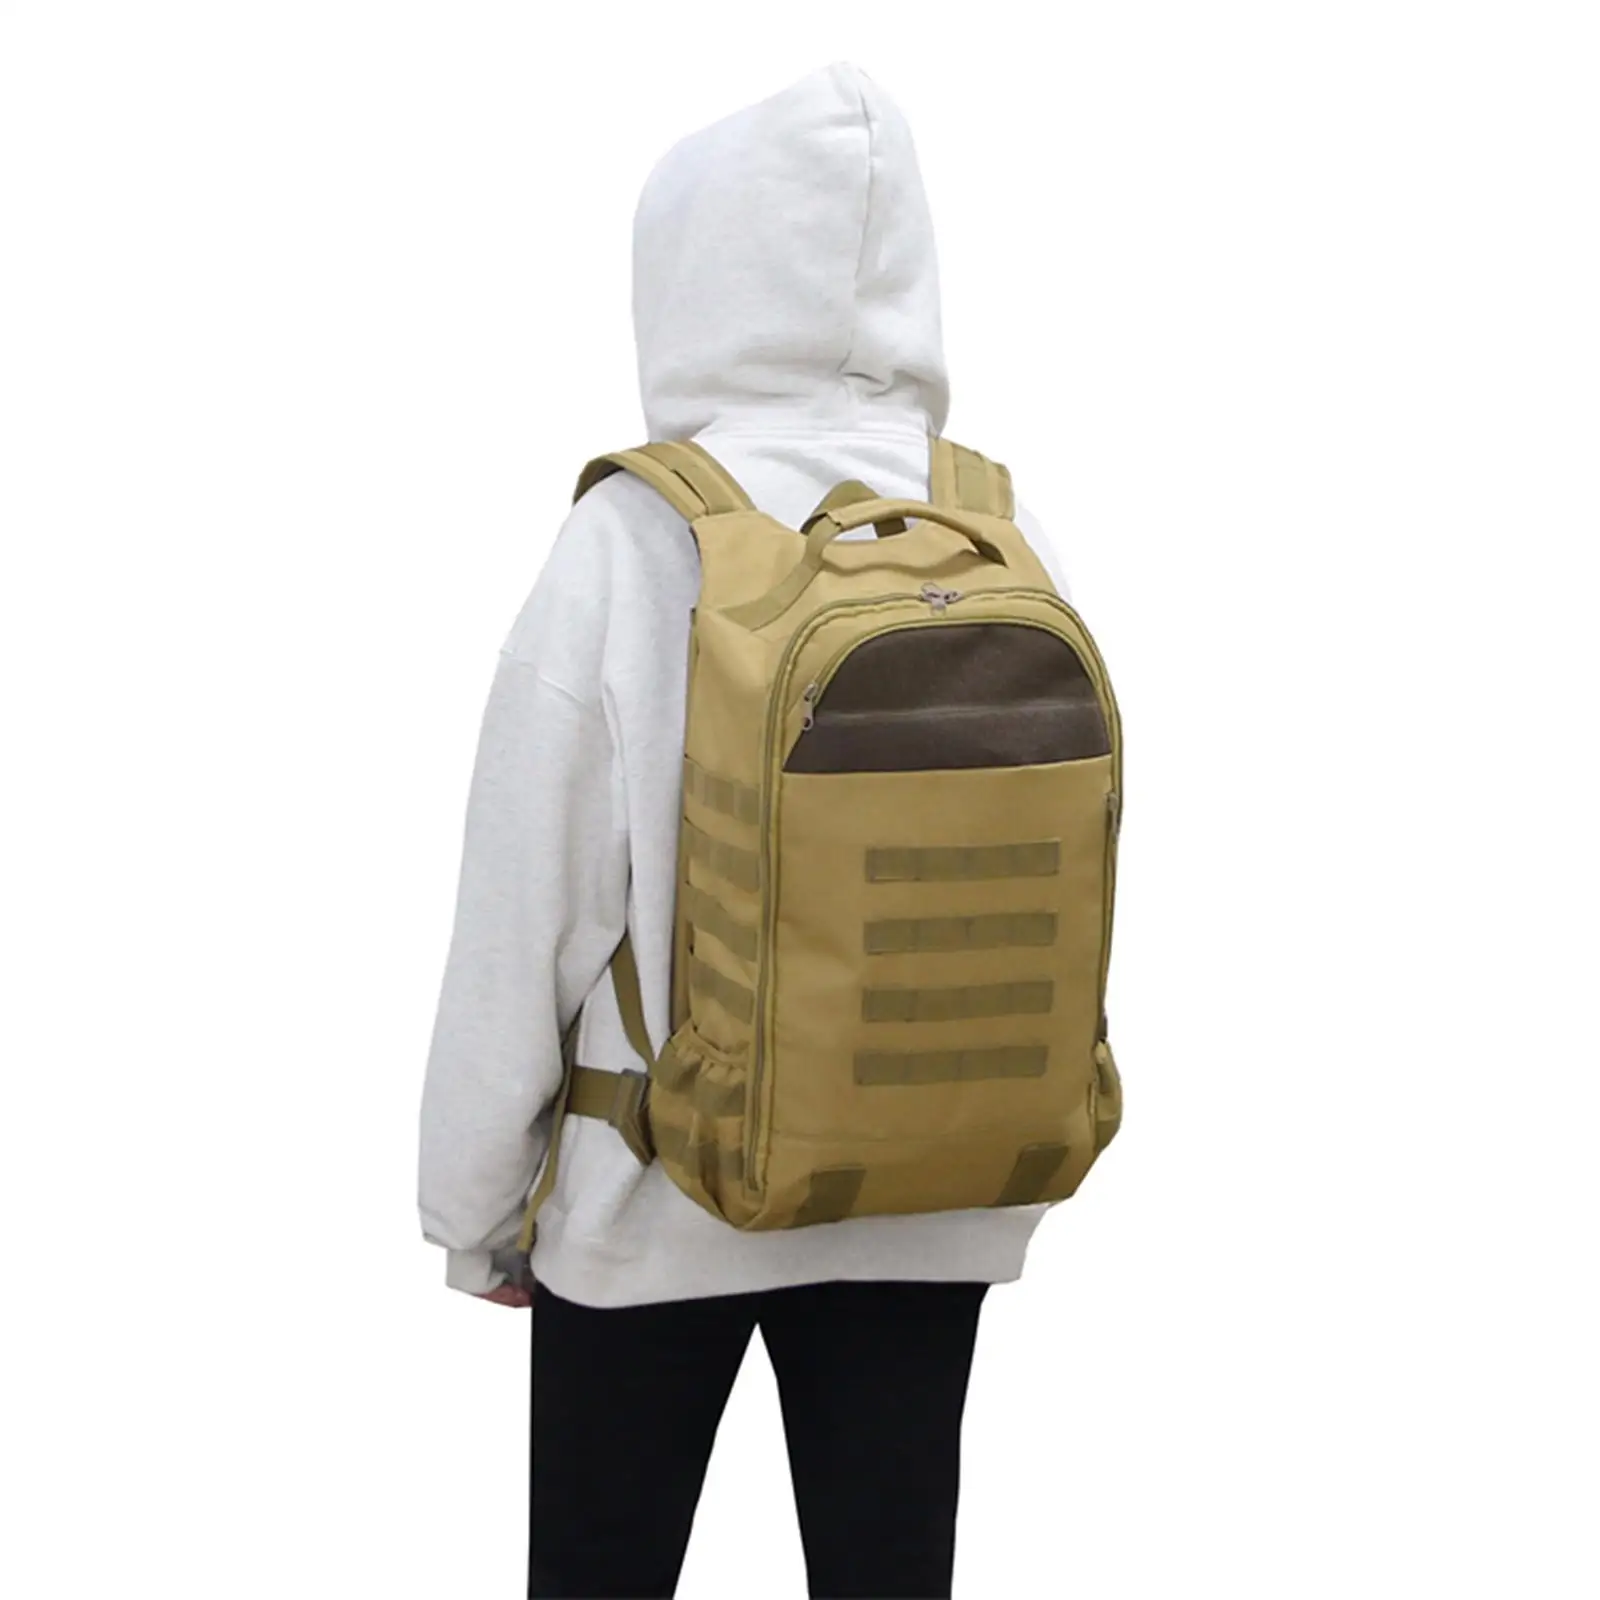 Diaper Backpack Camping Bag Folding Multi Pockets Knapsack for Women Trekking Travel